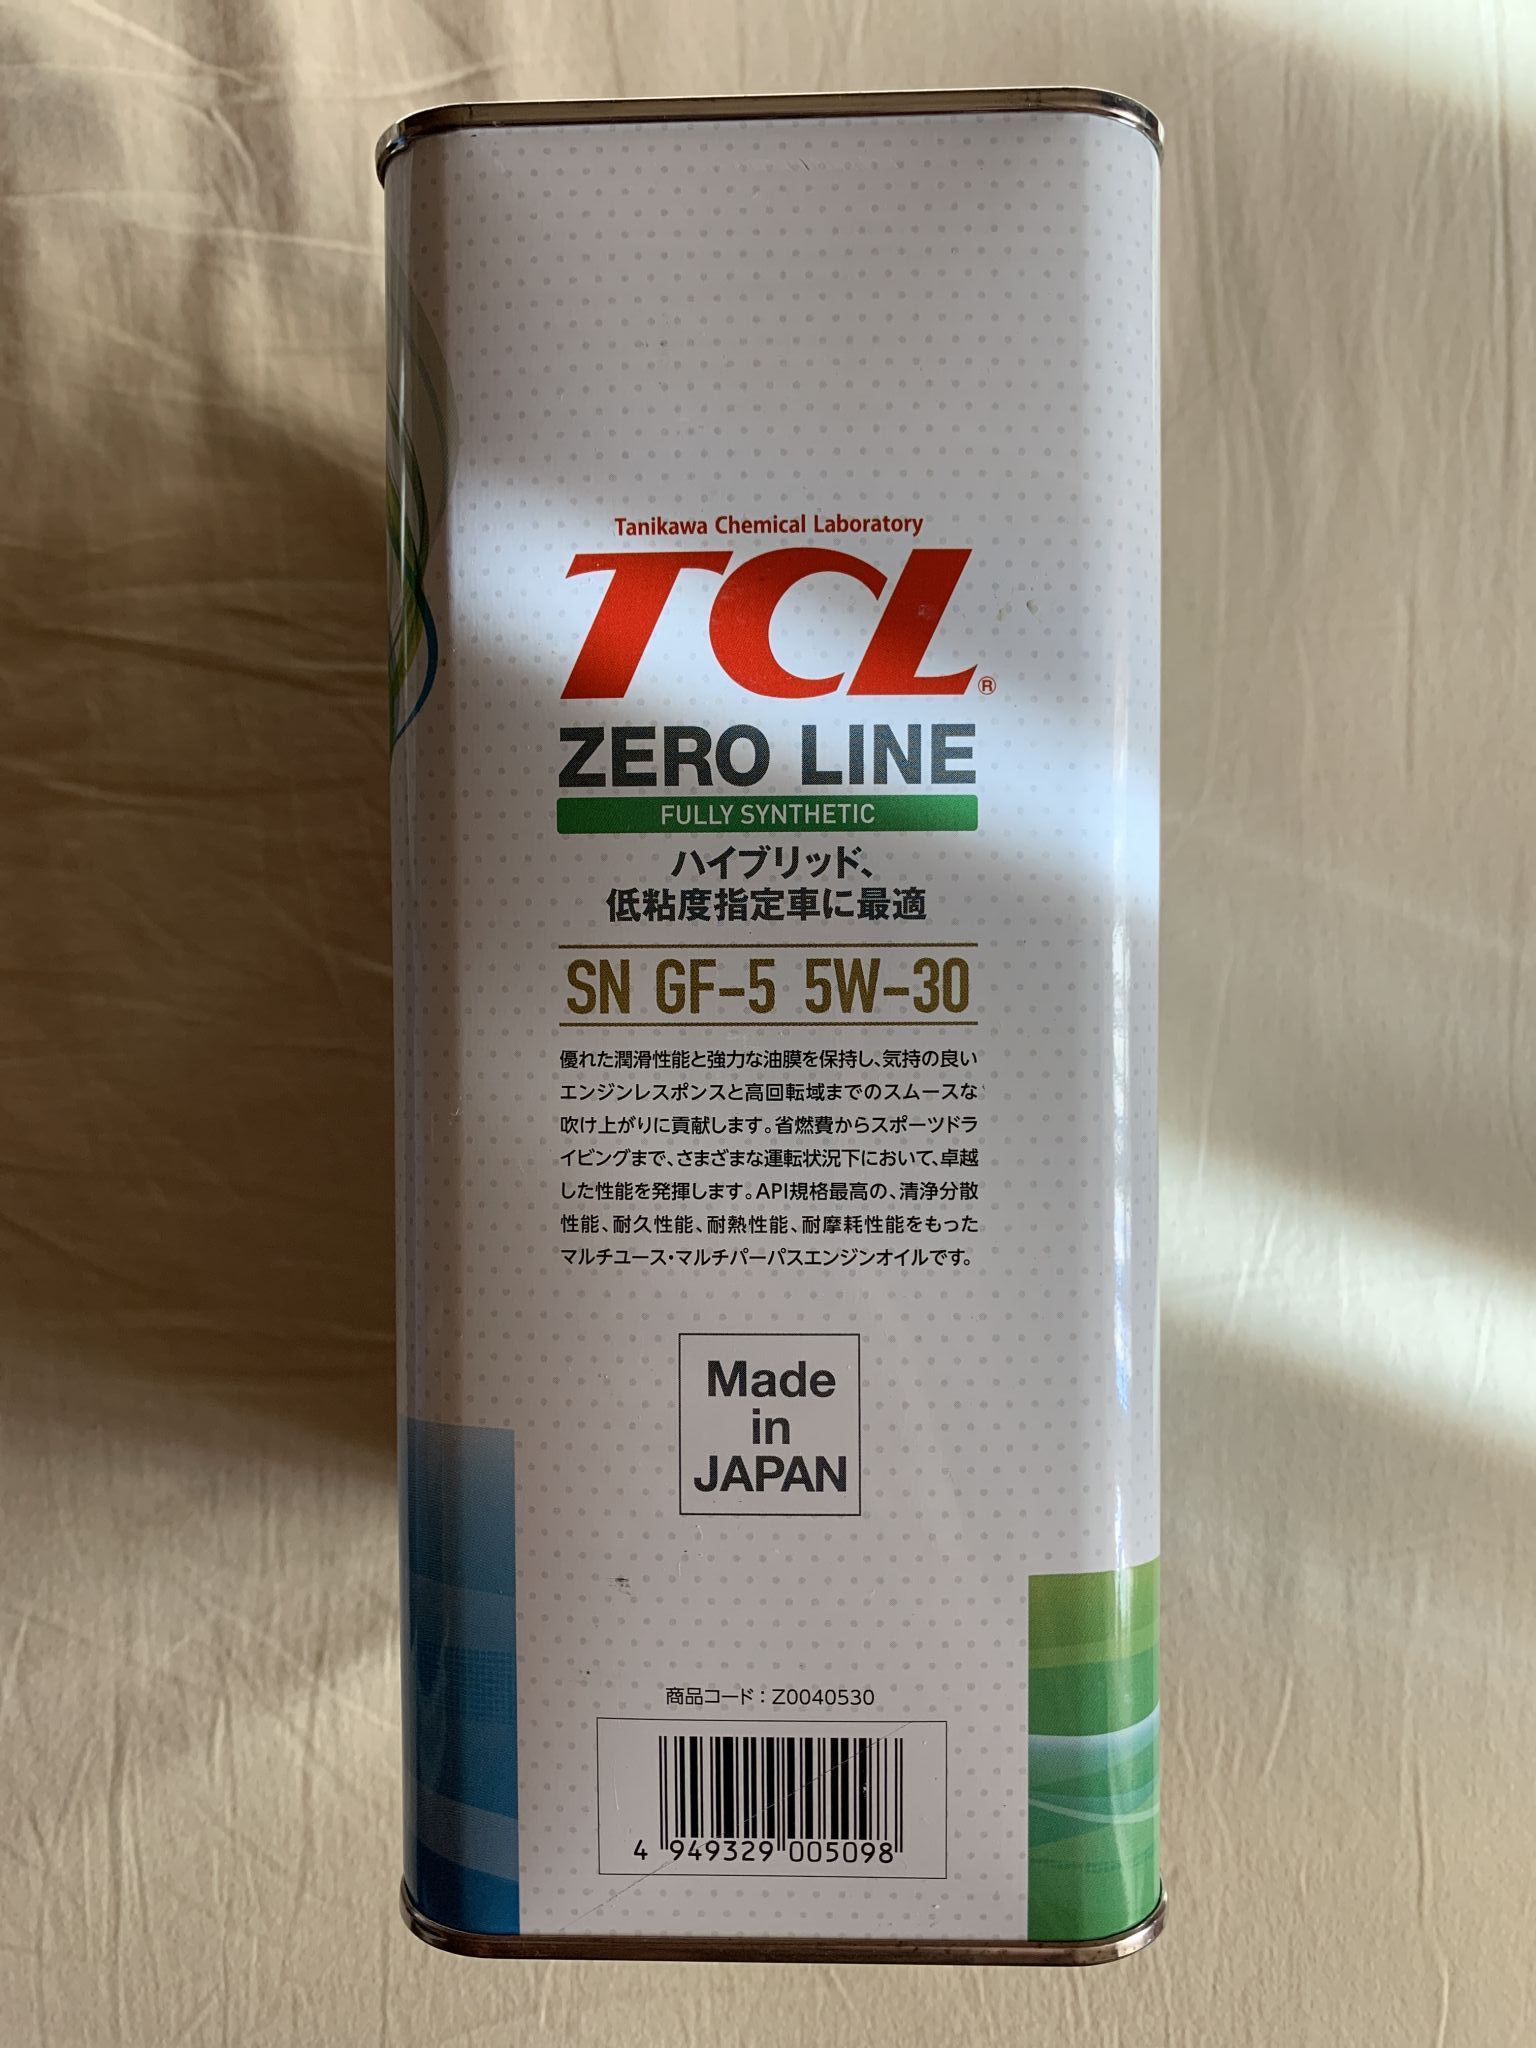 Масло Zero line 5w30. Полка масло TCL. TCL масло сравнительные тесты. TCL Zero line 5w-30 SN/gf-5 цены.